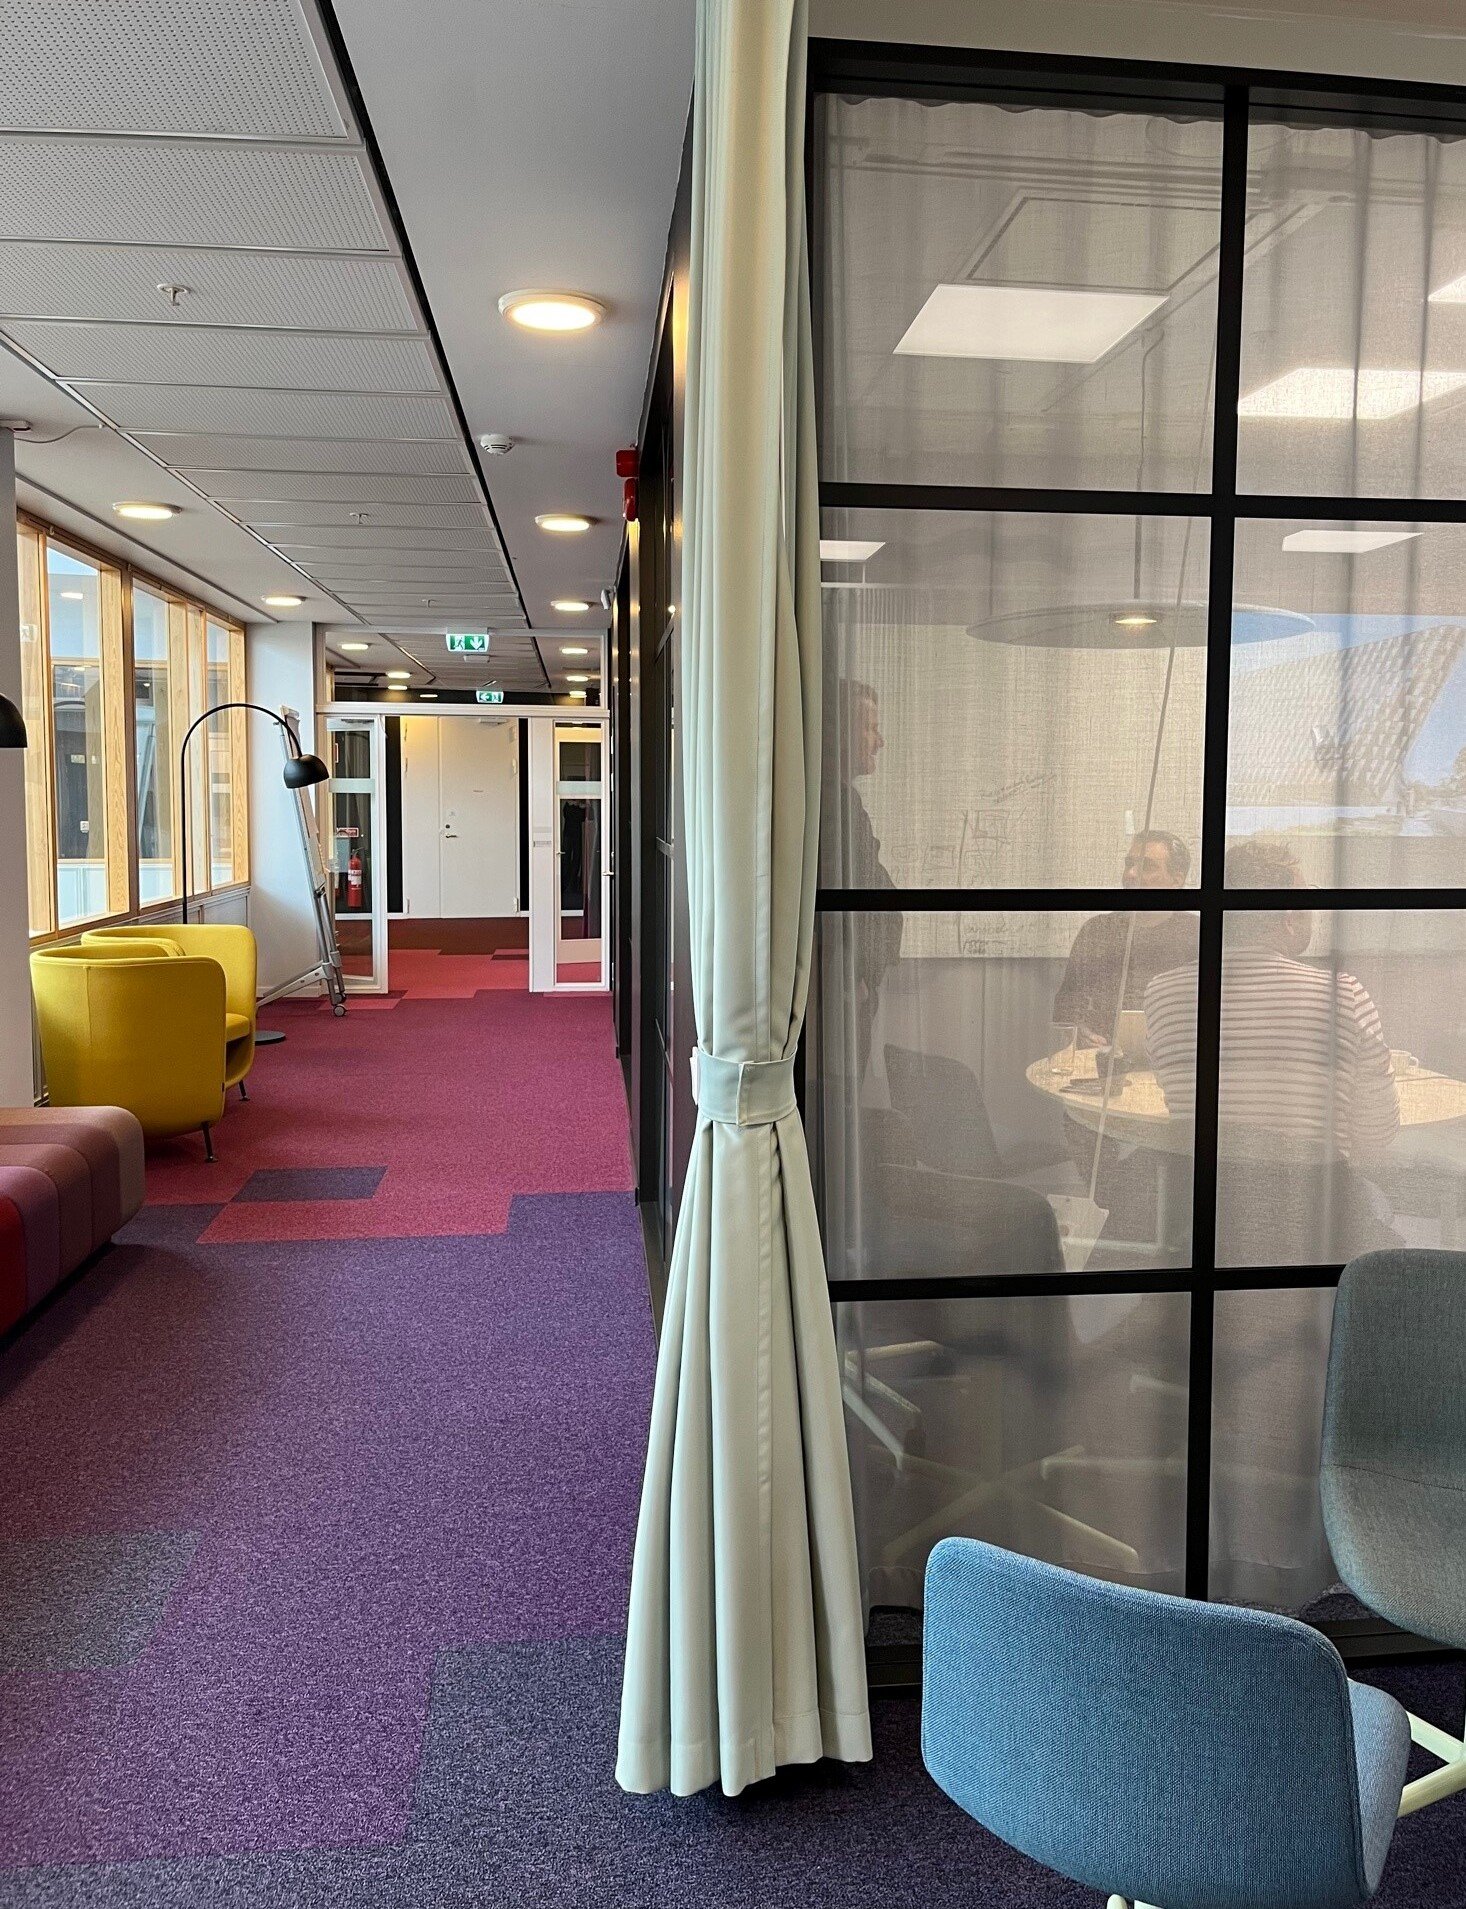 En korridor med fåtöljer och ett mötesrum med glasdörrar hos Enheten för Undervisning och lärande, ANA10.